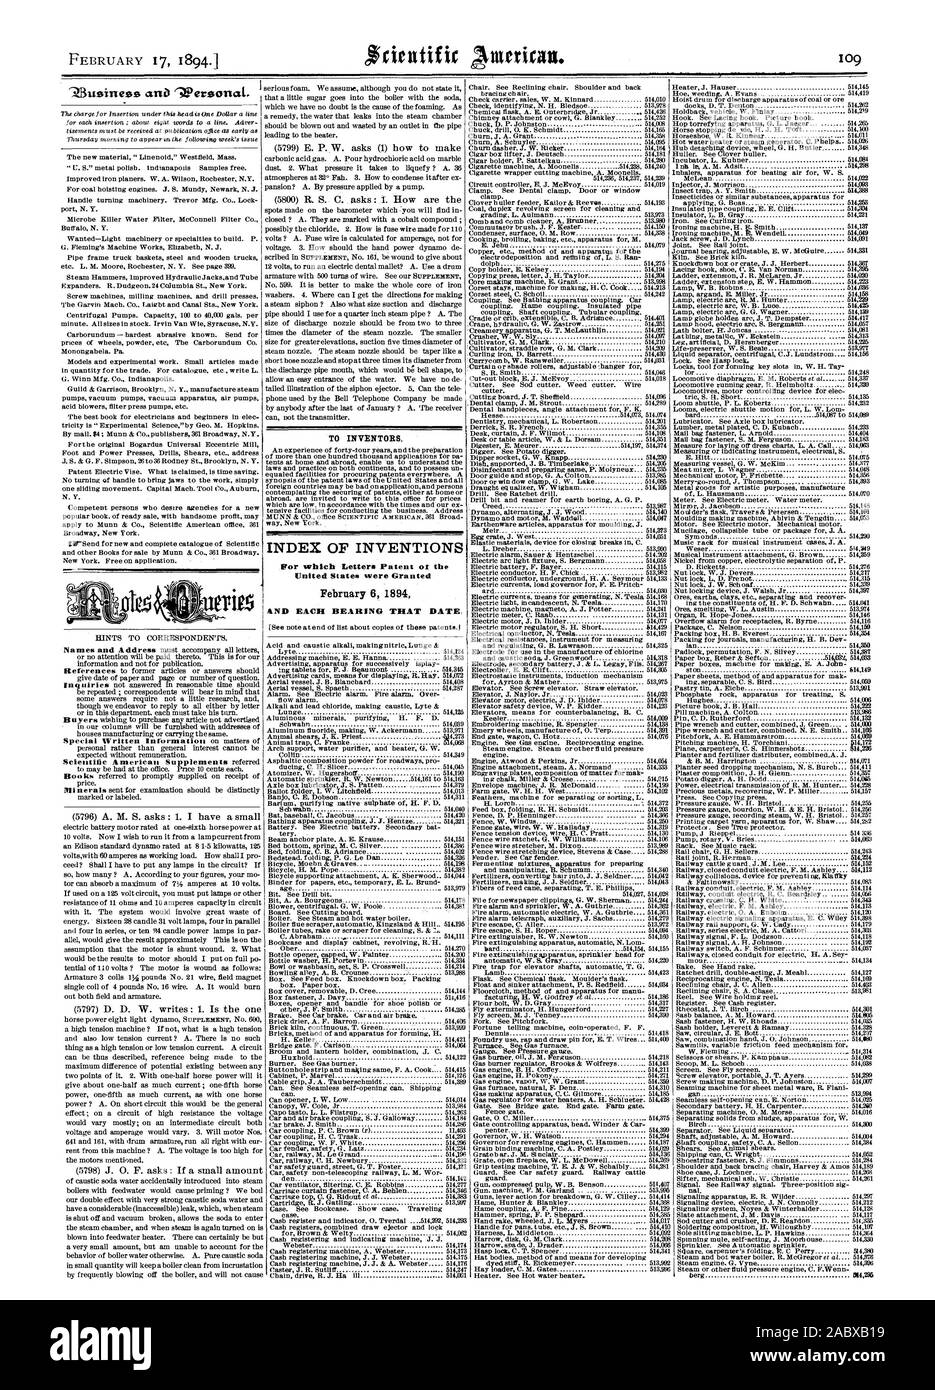 Per gli inventori. Indice delle invenzioni Febbraio 6 1894 &ND ogni cuscinetto che data., Scientific American, 1894-02-17 Foto Stock